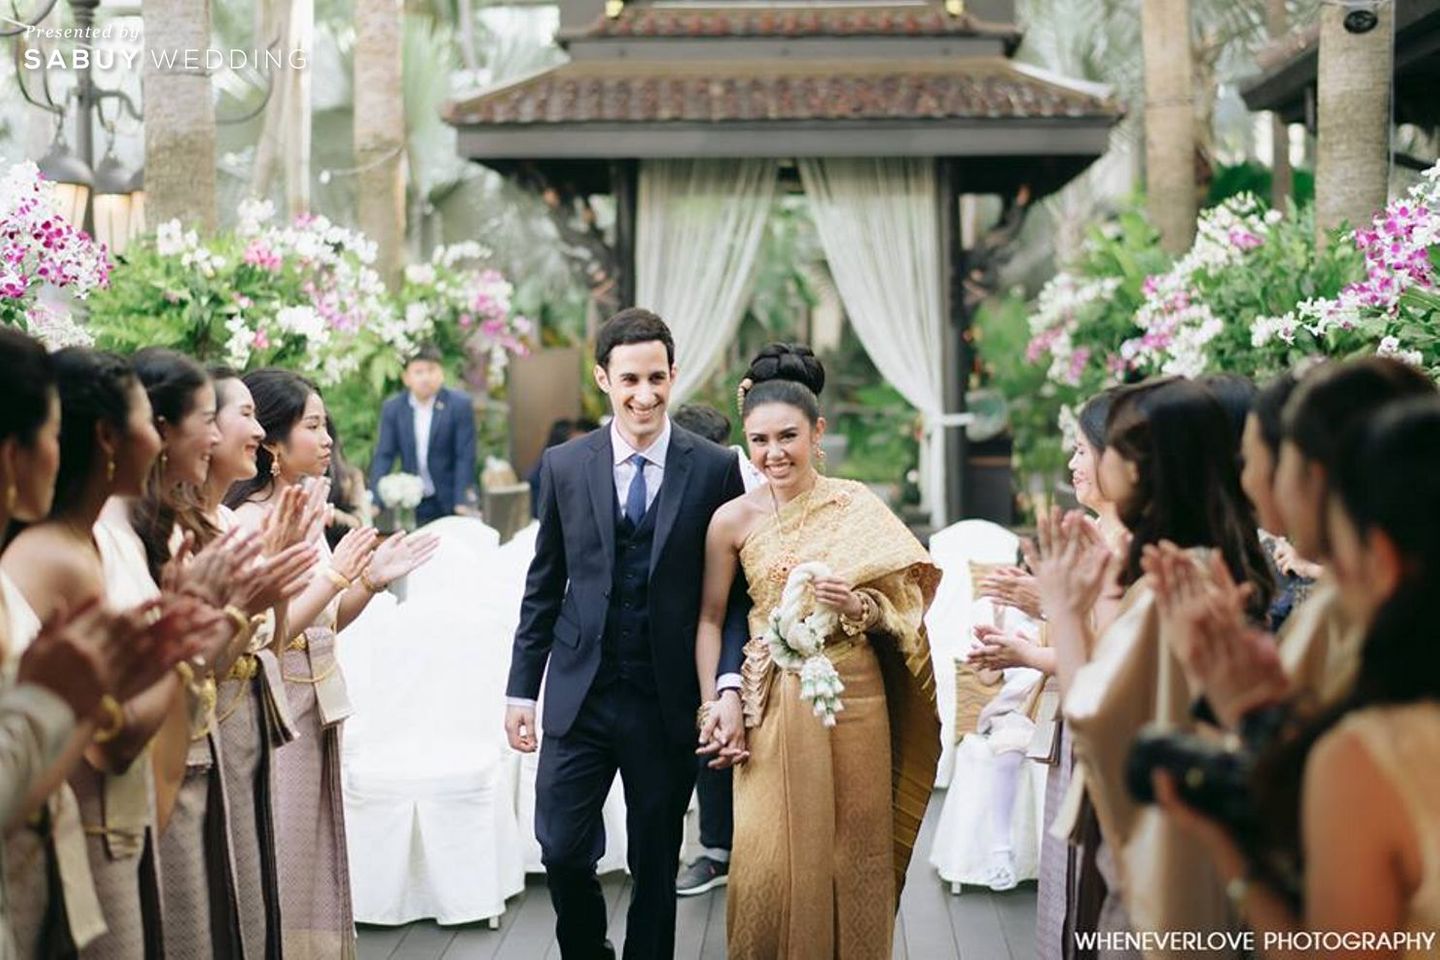 งานหมั้น,พิธีหมั้น,พิธีแต่งงาน,พิธีแต่งงานแบบไทย,เจ้าสาว,เจ้าบ่าว,เพื่อนเจ้าสาว,สถานที่แต่งงาน,สถานที่จัดงานแต่งงาน,Wheneverlove Photography,Shangri-La Hotel,Bangkok งานหมั้นพิธีไทย โดนใจฝรั่ง Photo by Wheneverlove Photography